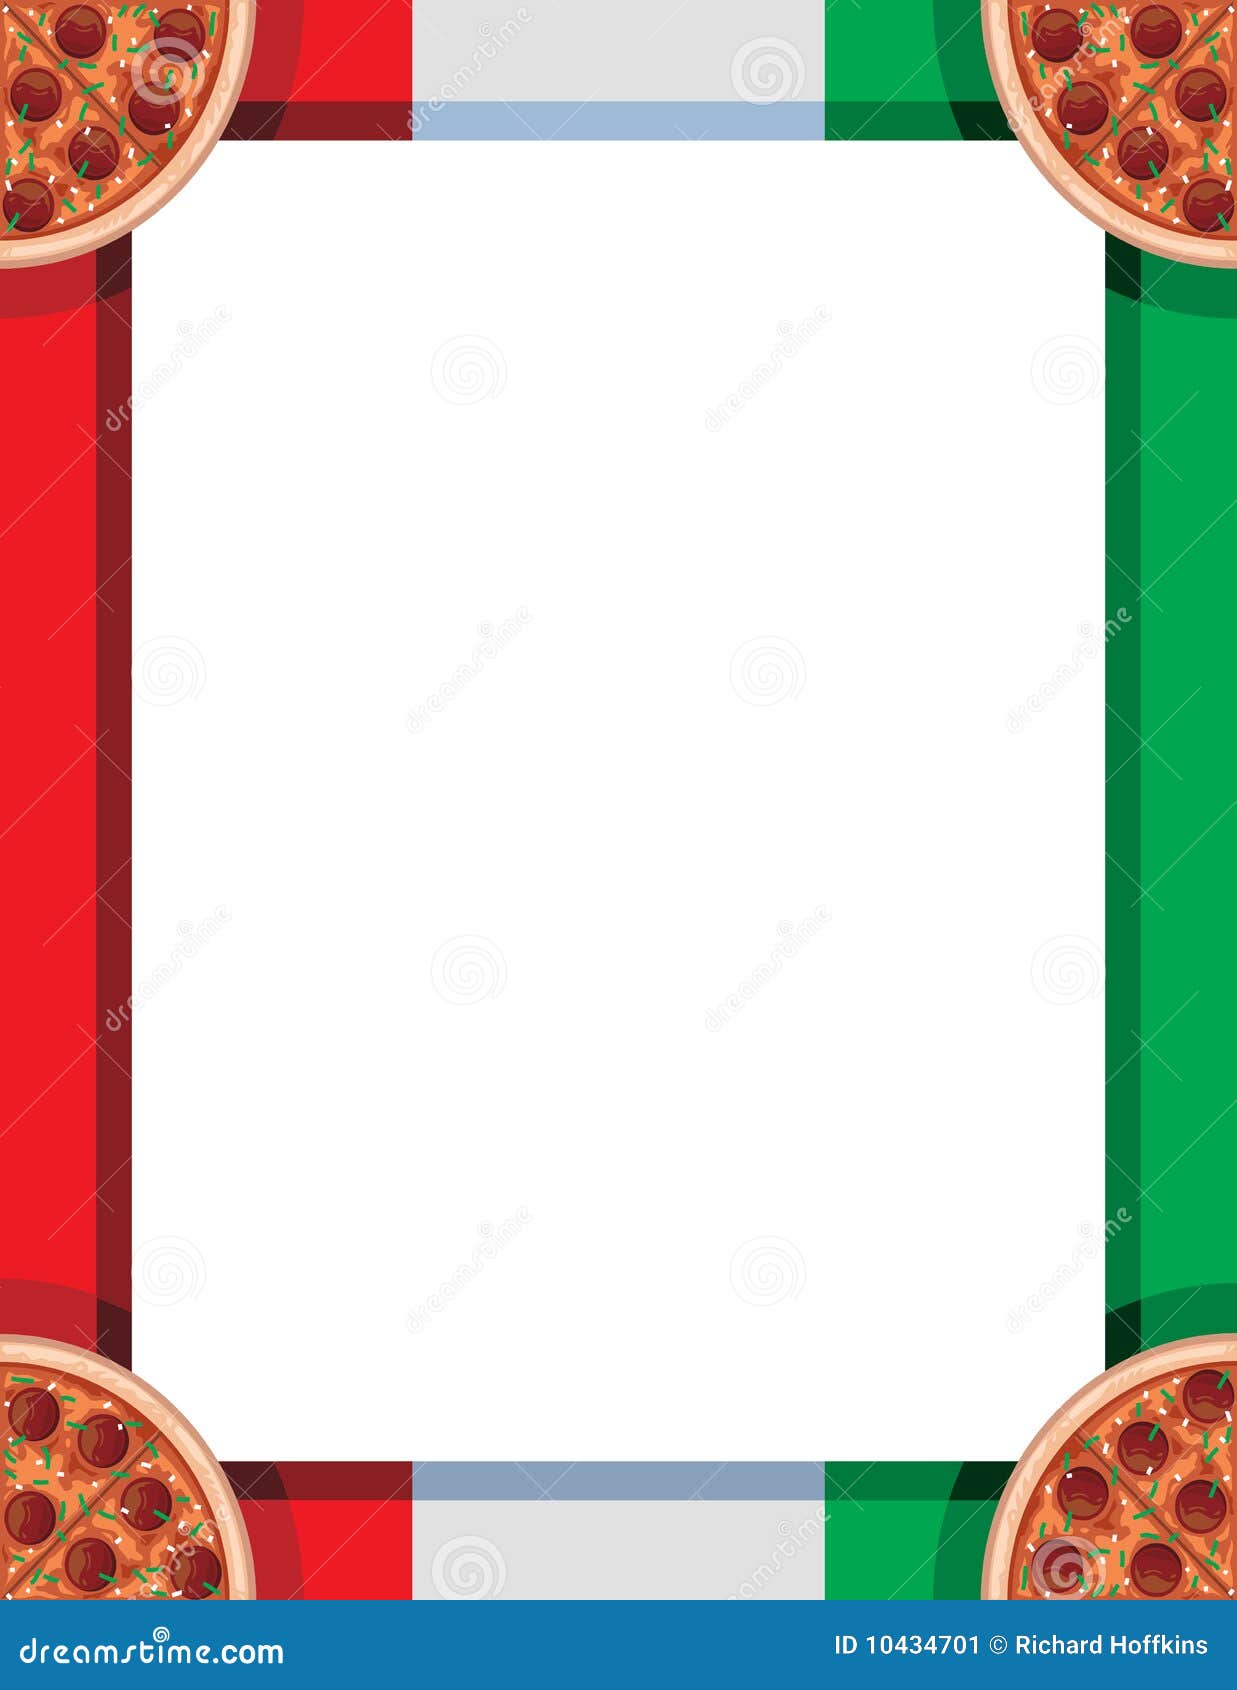 free pizza clip art border - photo #11